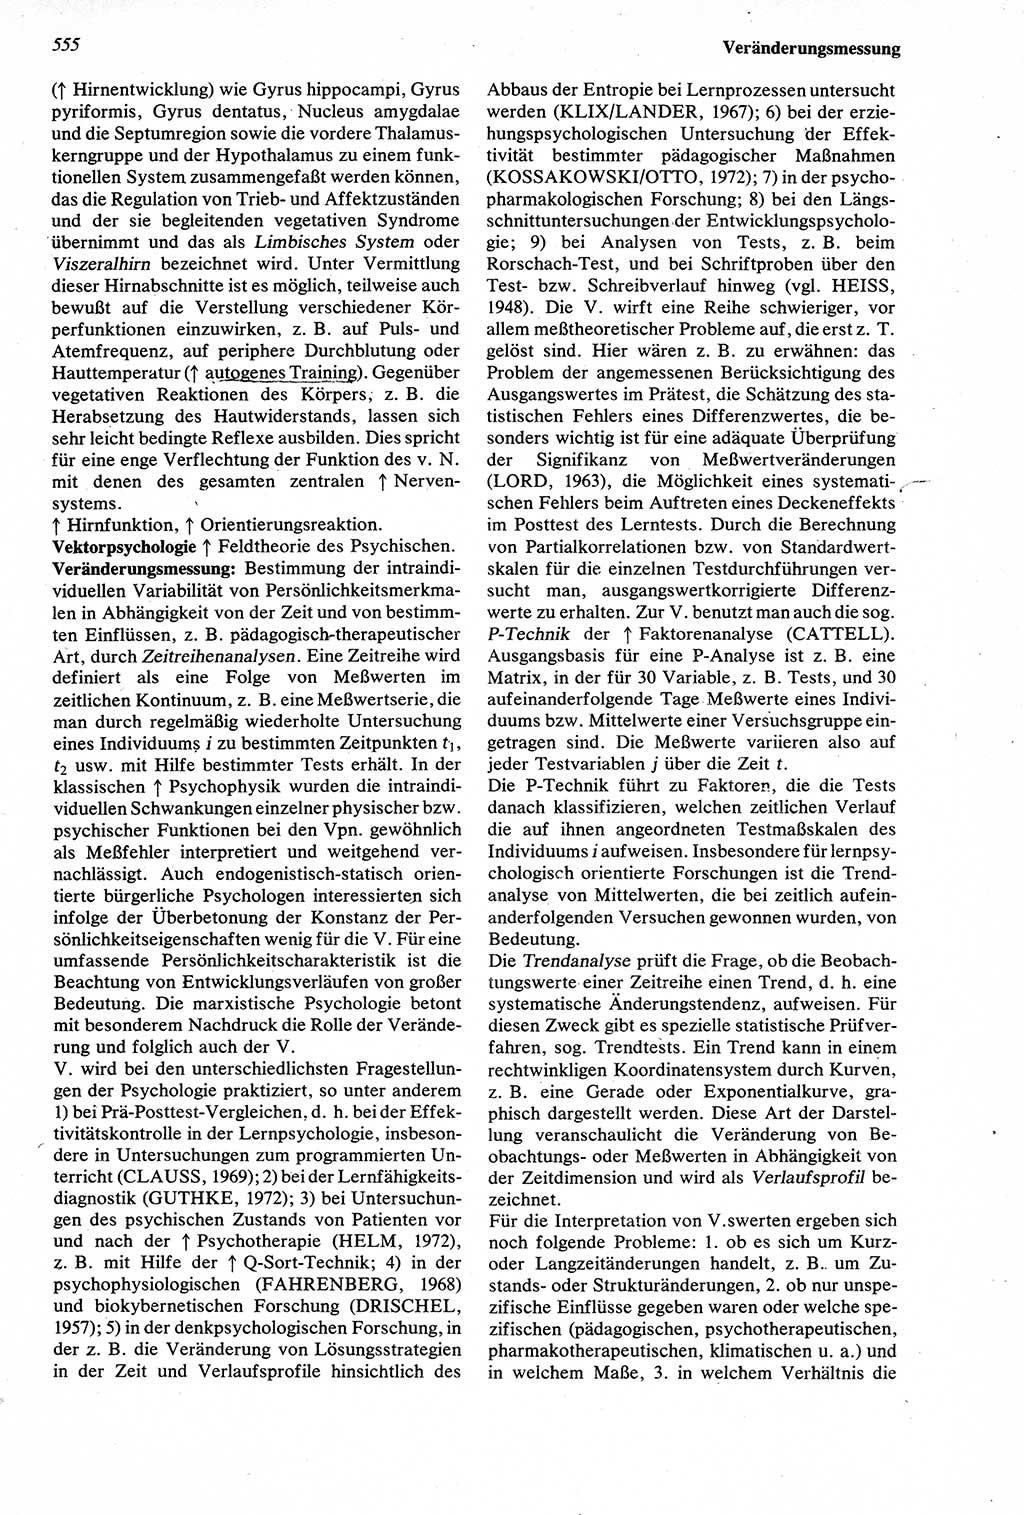 Wörterbuch der Psychologie [Deutsche Demokratische Republik (DDR)] 1976, Seite 555 (Wb. Psych. DDR 1976, S. 555)